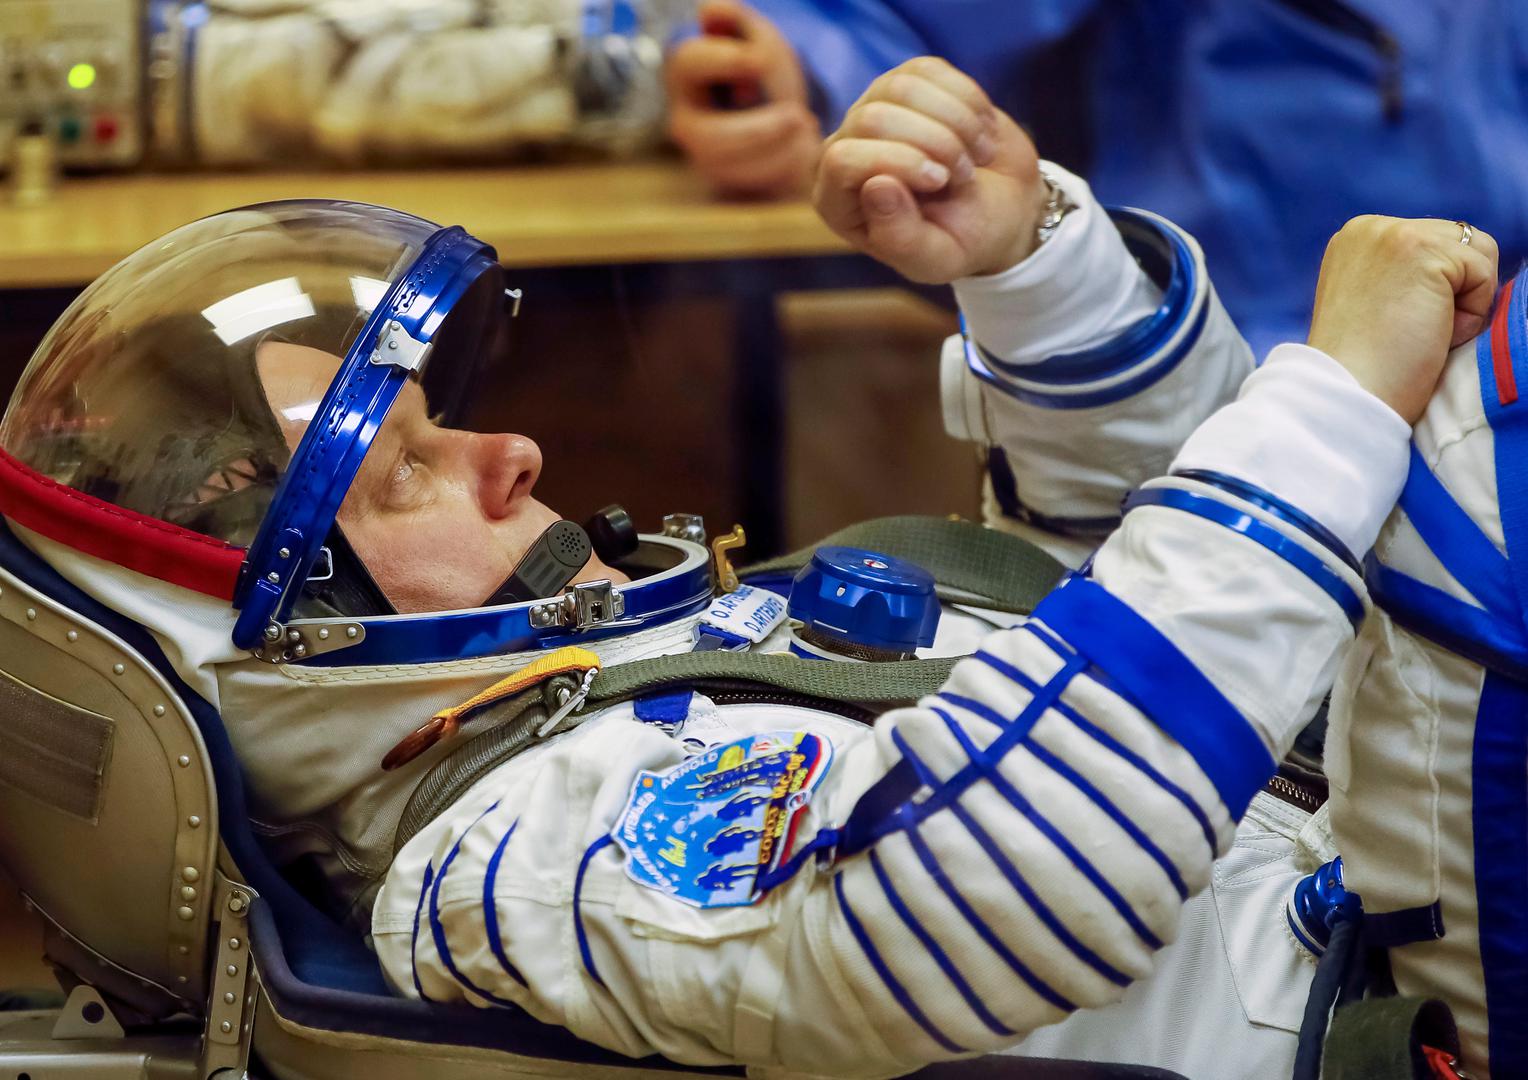 U videozapisu koji je objavila ruska državna agencija za istraživanje svemira Roskosmos Artemjev i njegov kolega Anton Škaplerov, demonstrirali svoje nogometne vještine kada su zaigrali nogomet u svemiru. Kozmonauti su se vratili na Zemlju 3. lipnja, noseći sa sobom i loptu.

